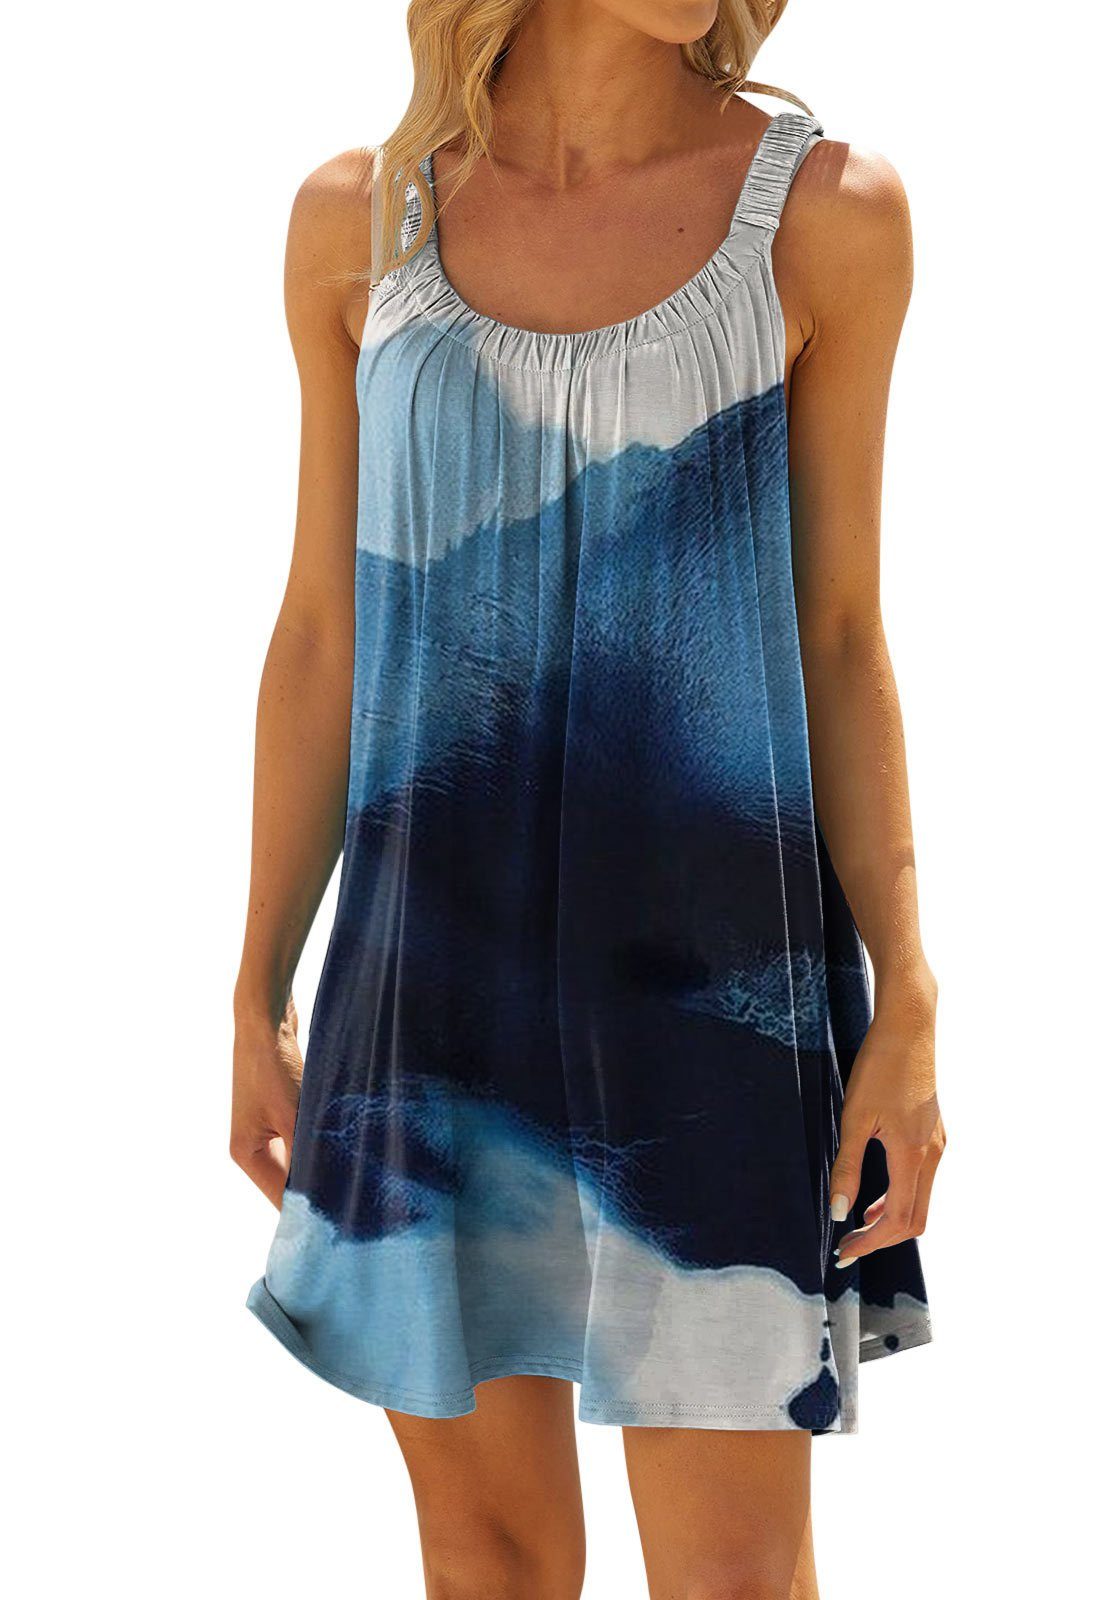 Babarella DMKL-05K Damen Kleid mit Sommerkleid Strandmode Strandkleid Blau Druck